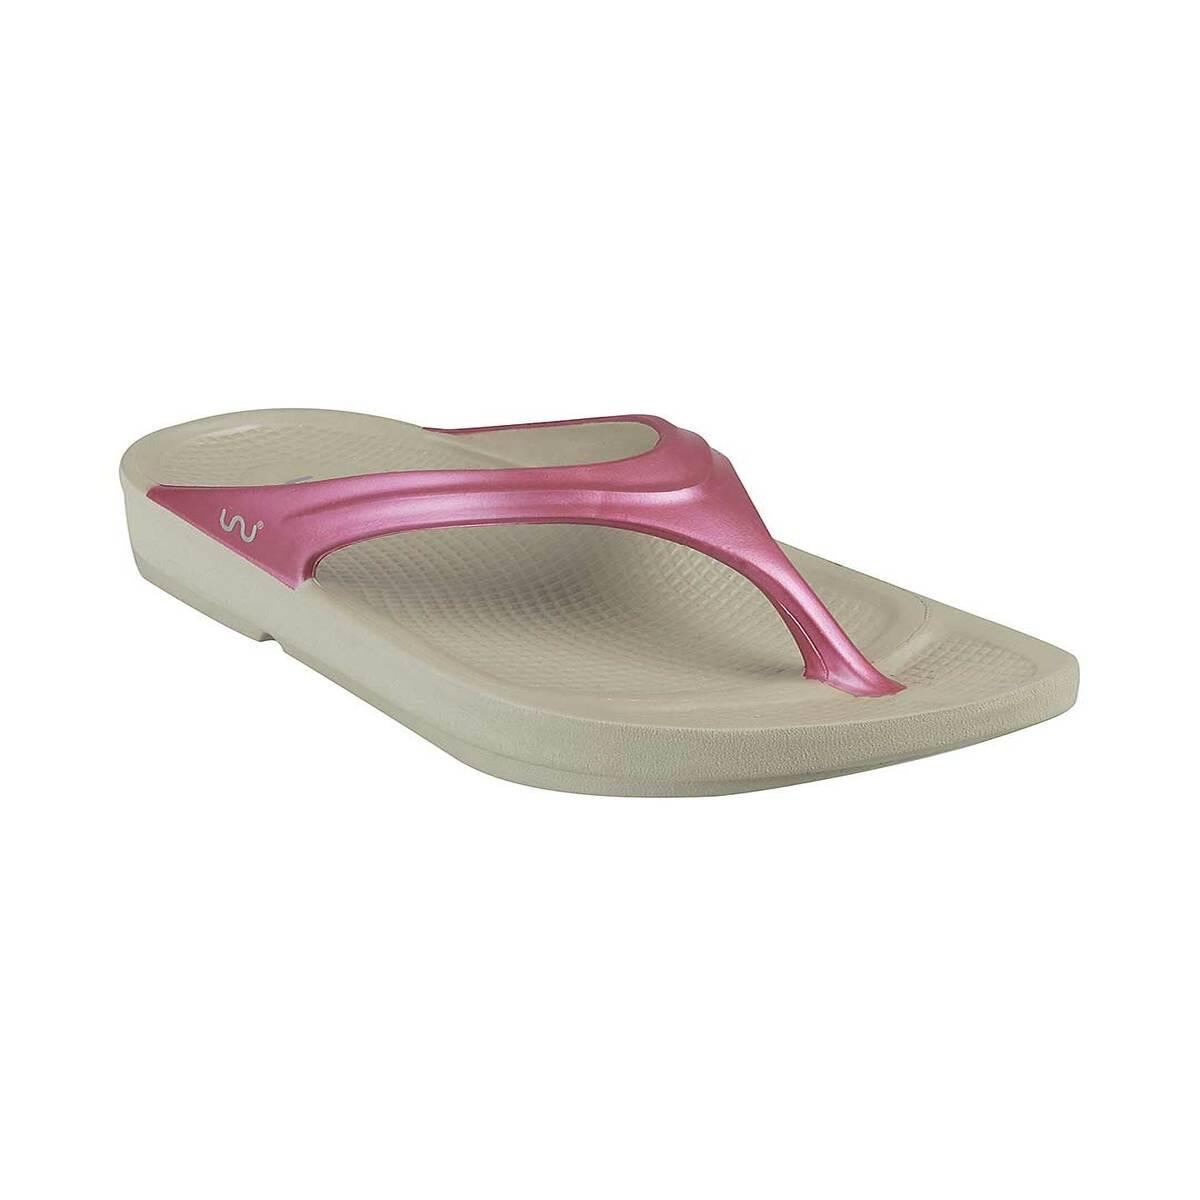 Flip Flops - Shop for Women's Footwear Products Online